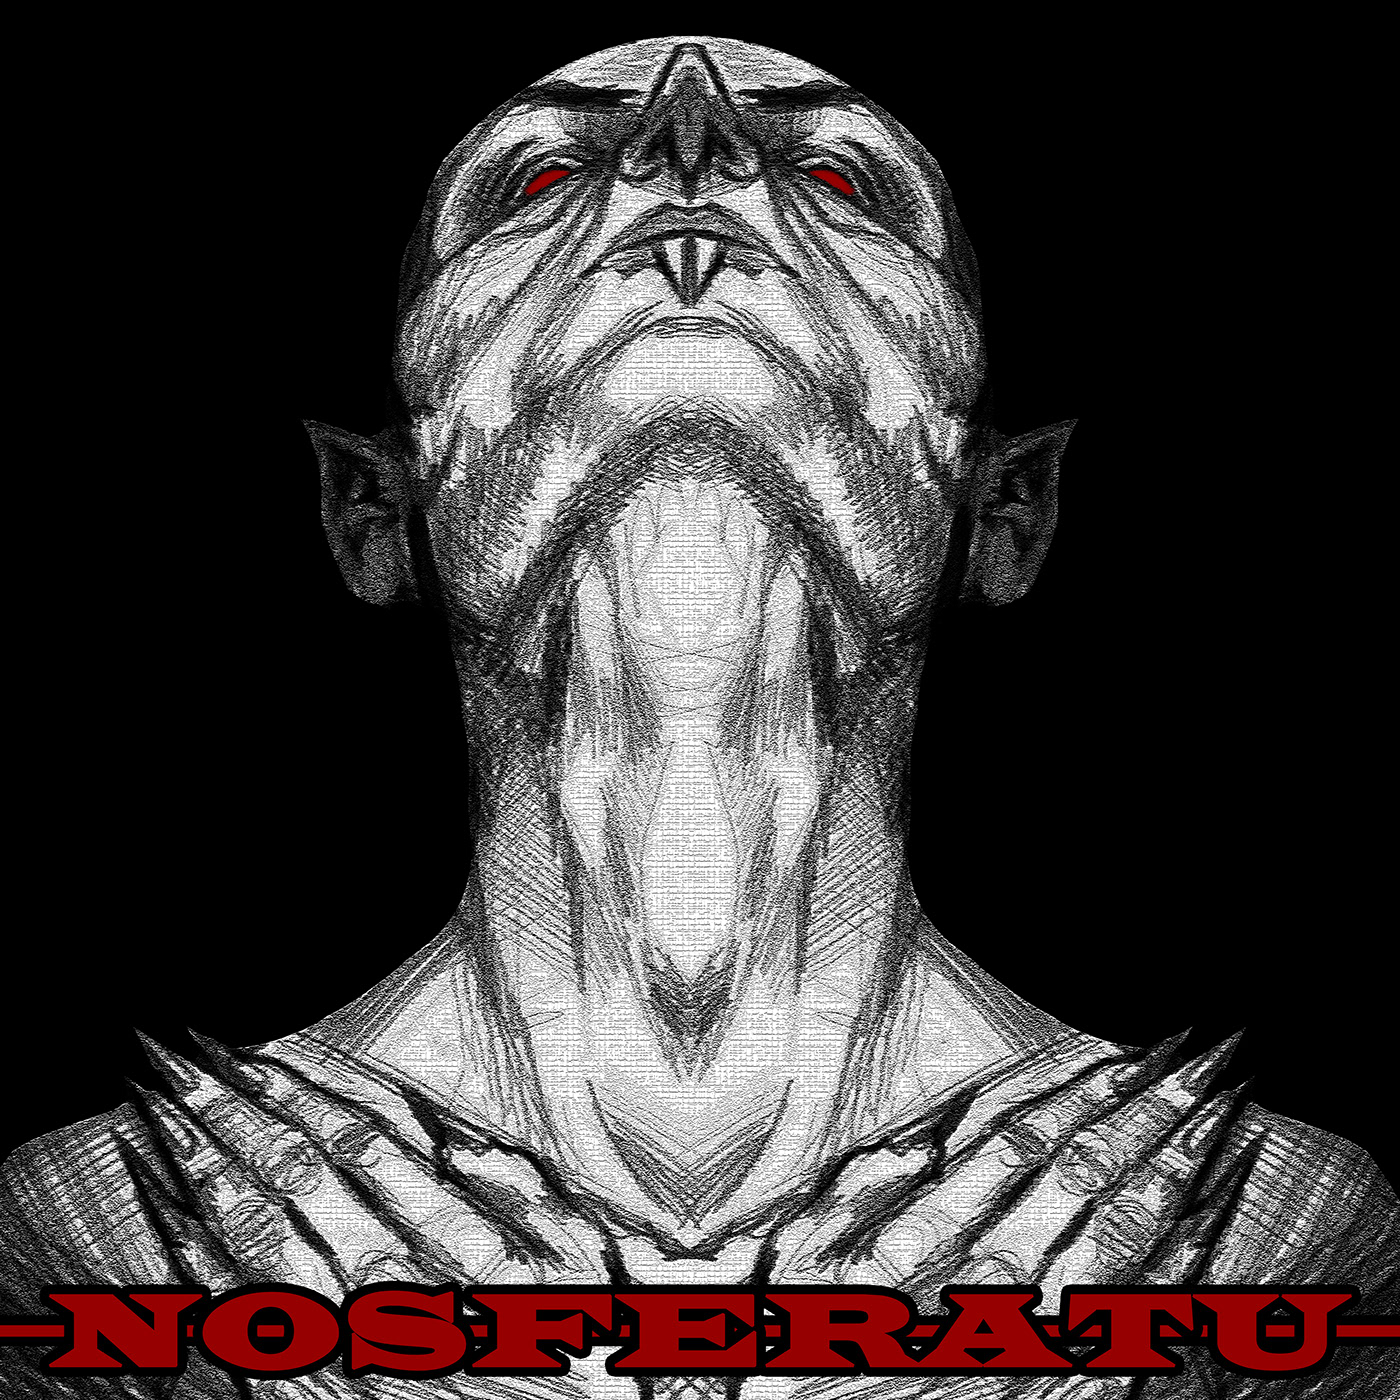 Drawing  Digital Art  ILLUSTRATION  album cover vampire nosferatu horror